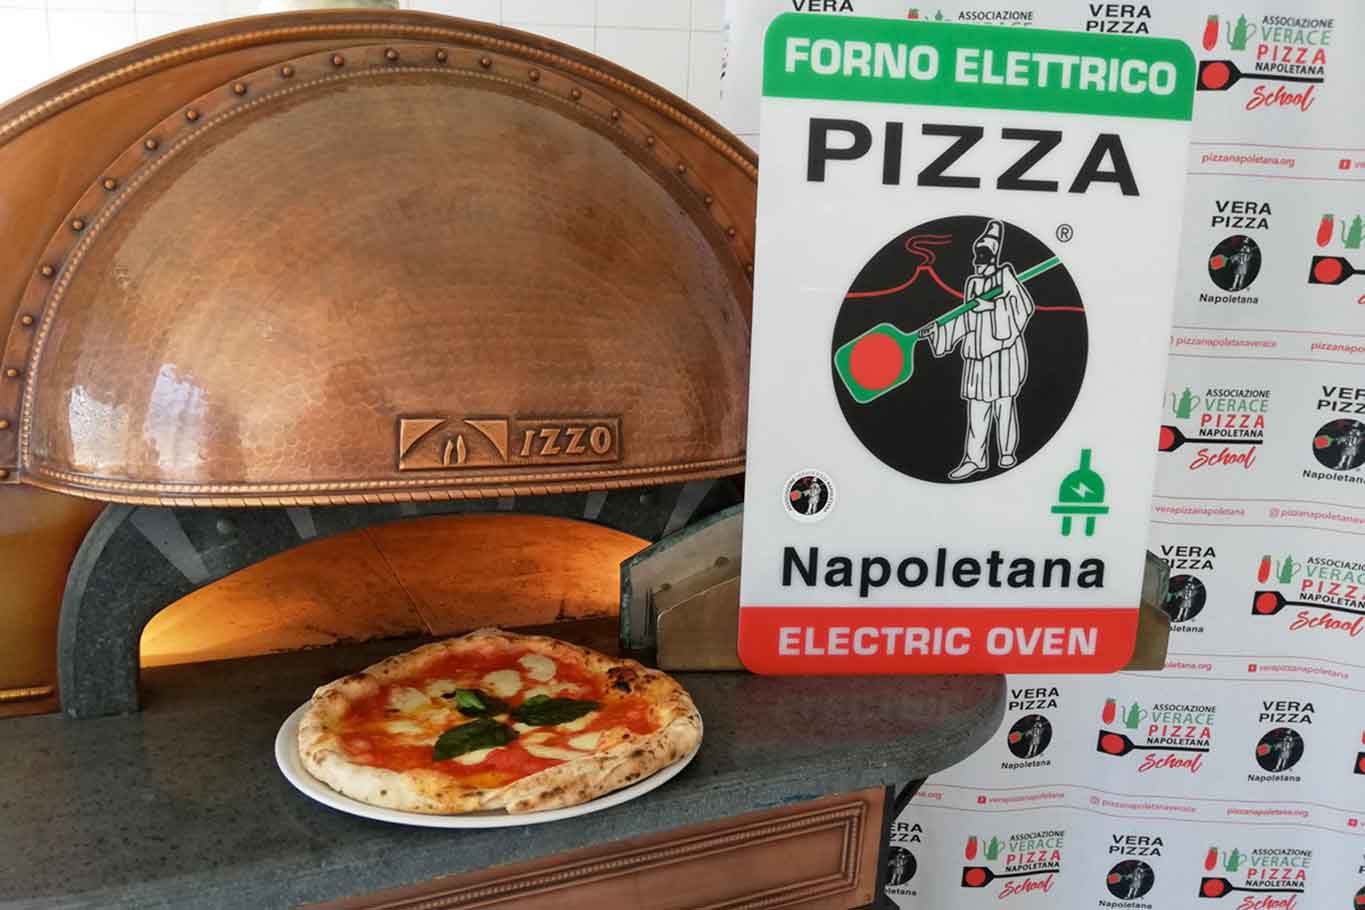 Il forno elettrico per la verace pizza napoletana è una bufala